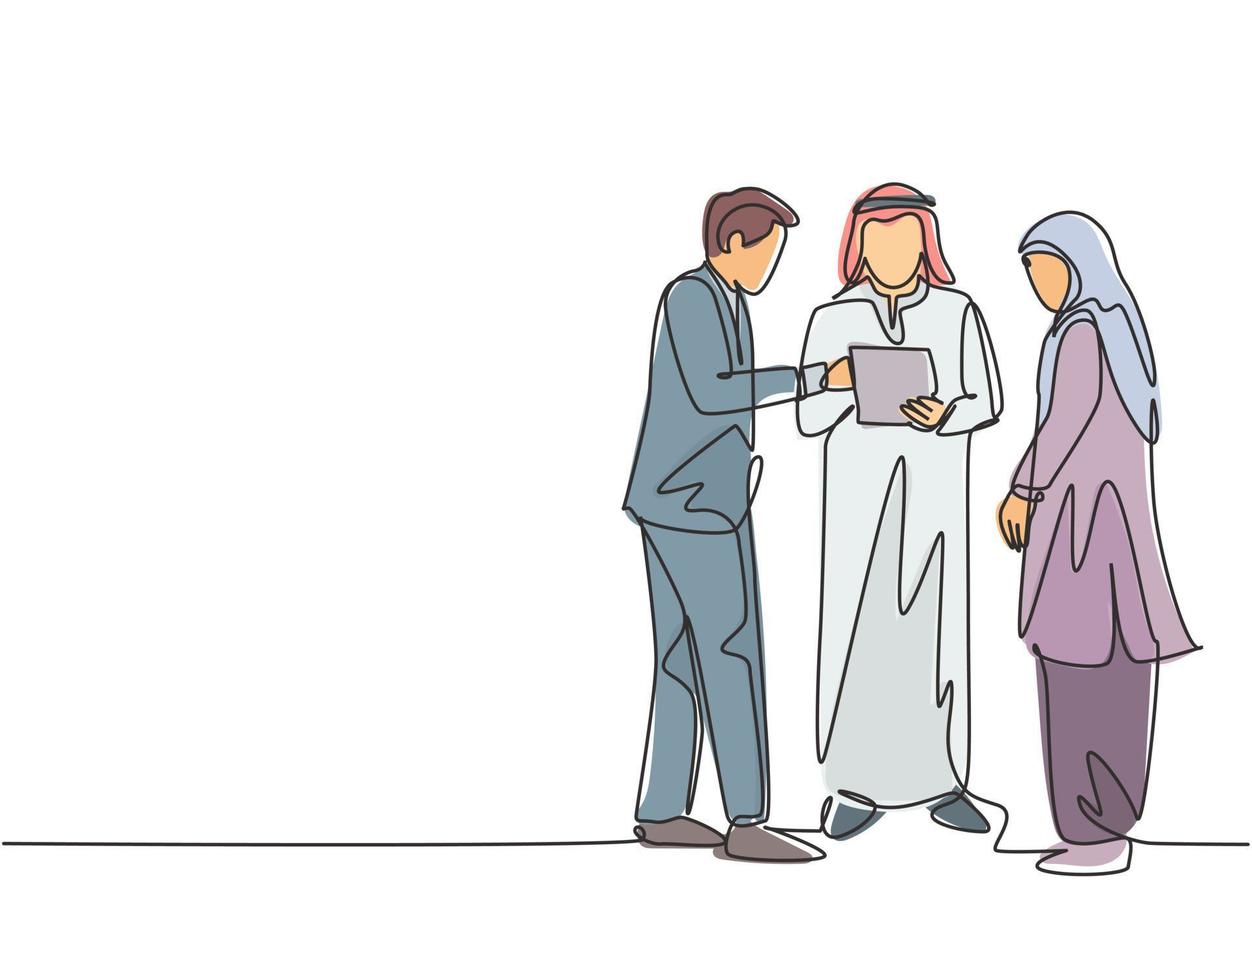 een enkele lijntekening van een jonge moslimzakenman die samen een zakelijke deal bespreekt. saoedi-arabische doek shmag, kandora, hoofddoek, thobe, hijab. doorlopende lijn tekenen ontwerp vectorillustratie vector